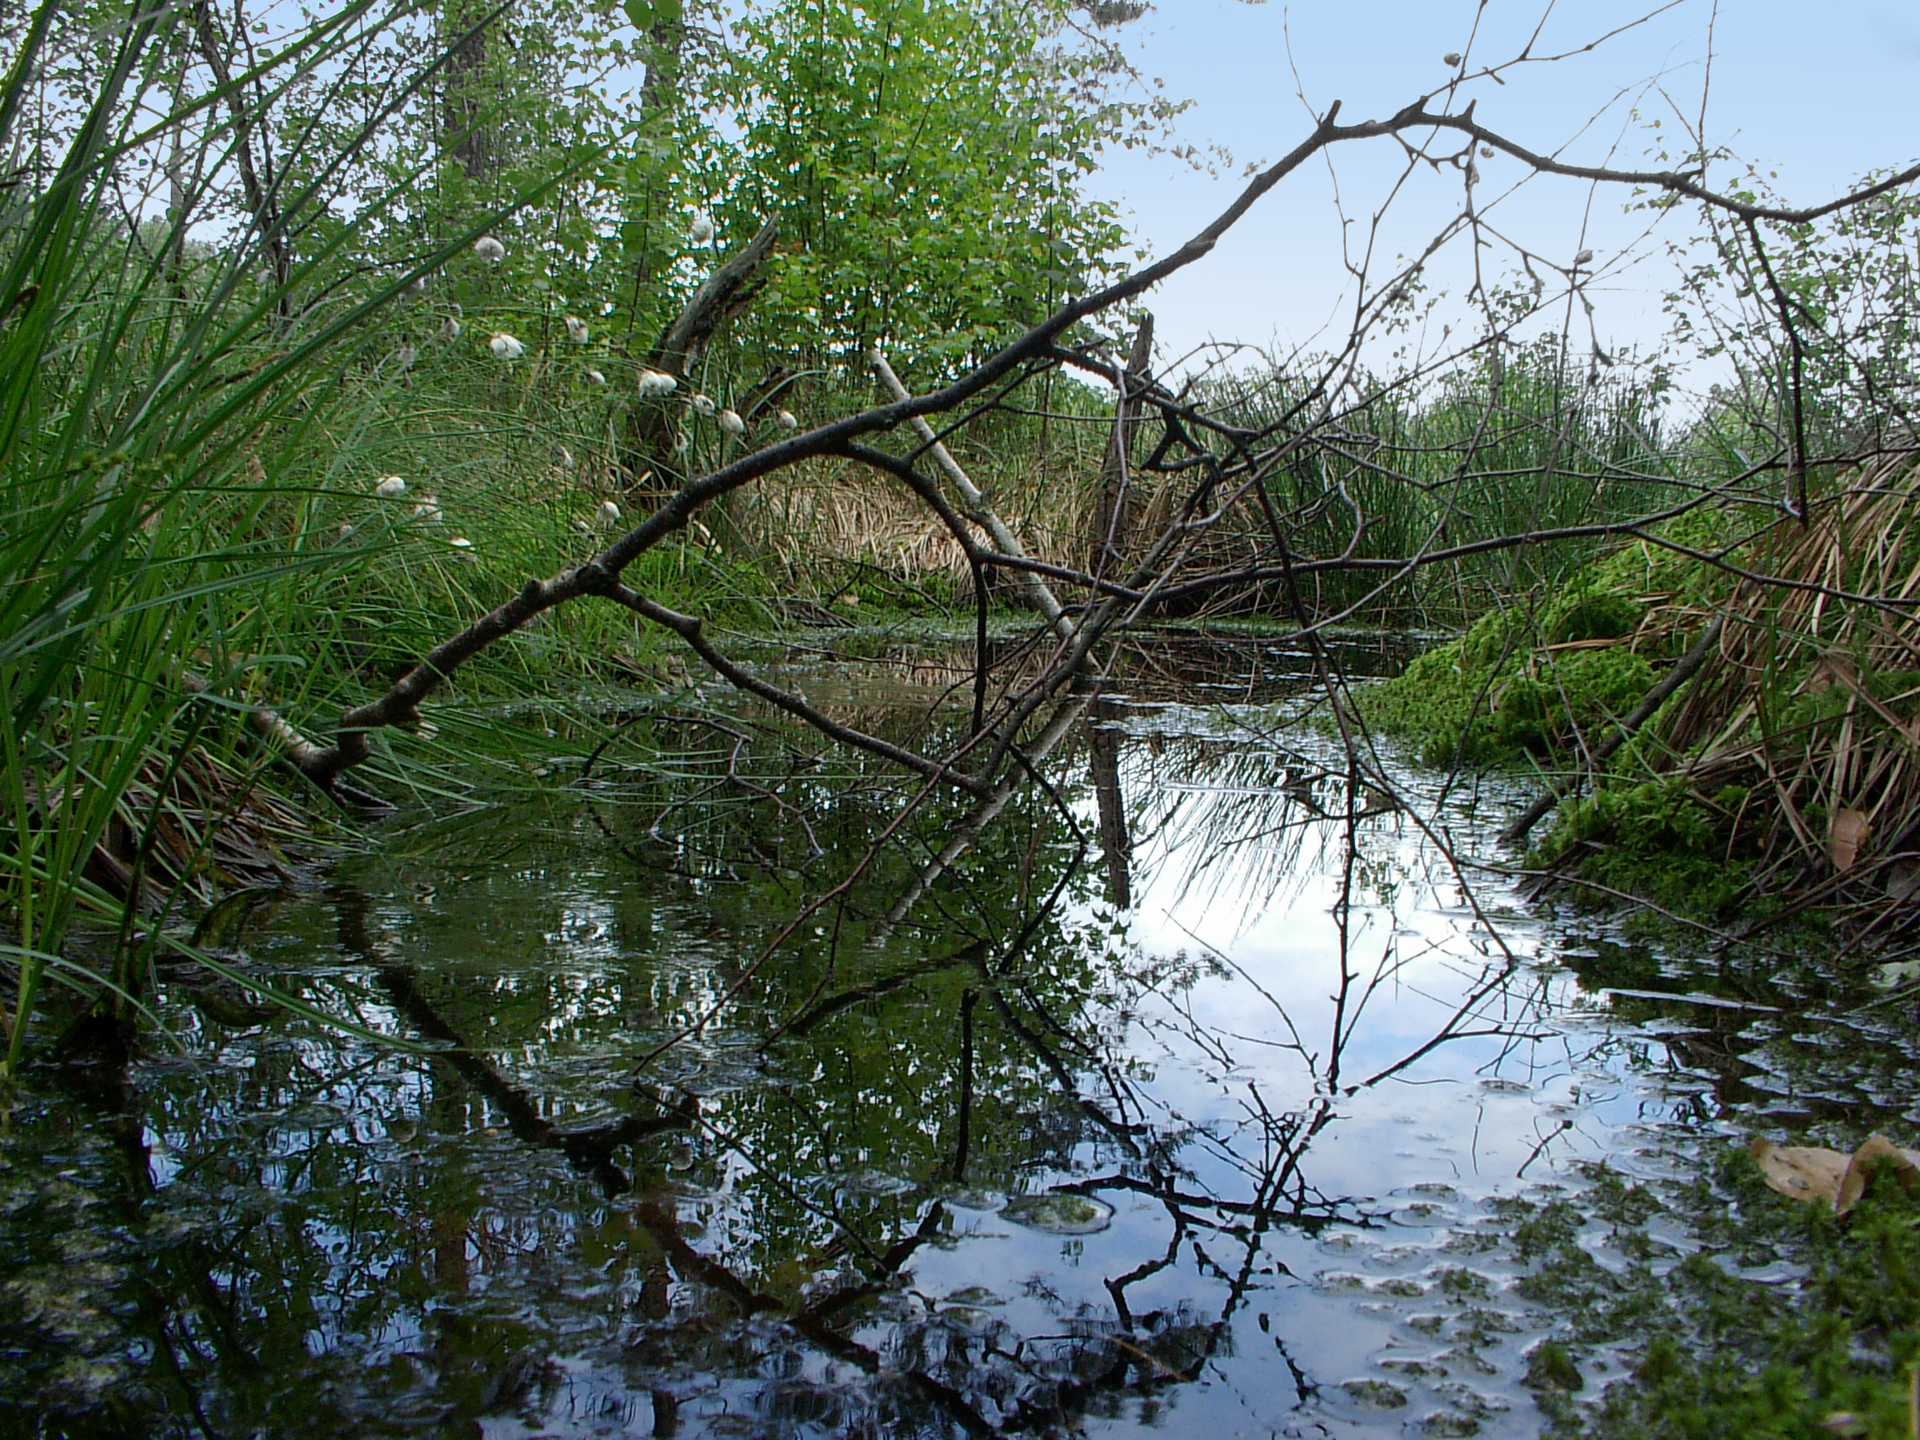 Fotografia przedstawia zalany wodą obszar. Zwisa nad nim uschnięta gałąź. Przy wodzie rosną drzewa i gęsta roślinność przybrzeżna. To rezerwat Torfowisko Rąbień w województwie łódzkim.